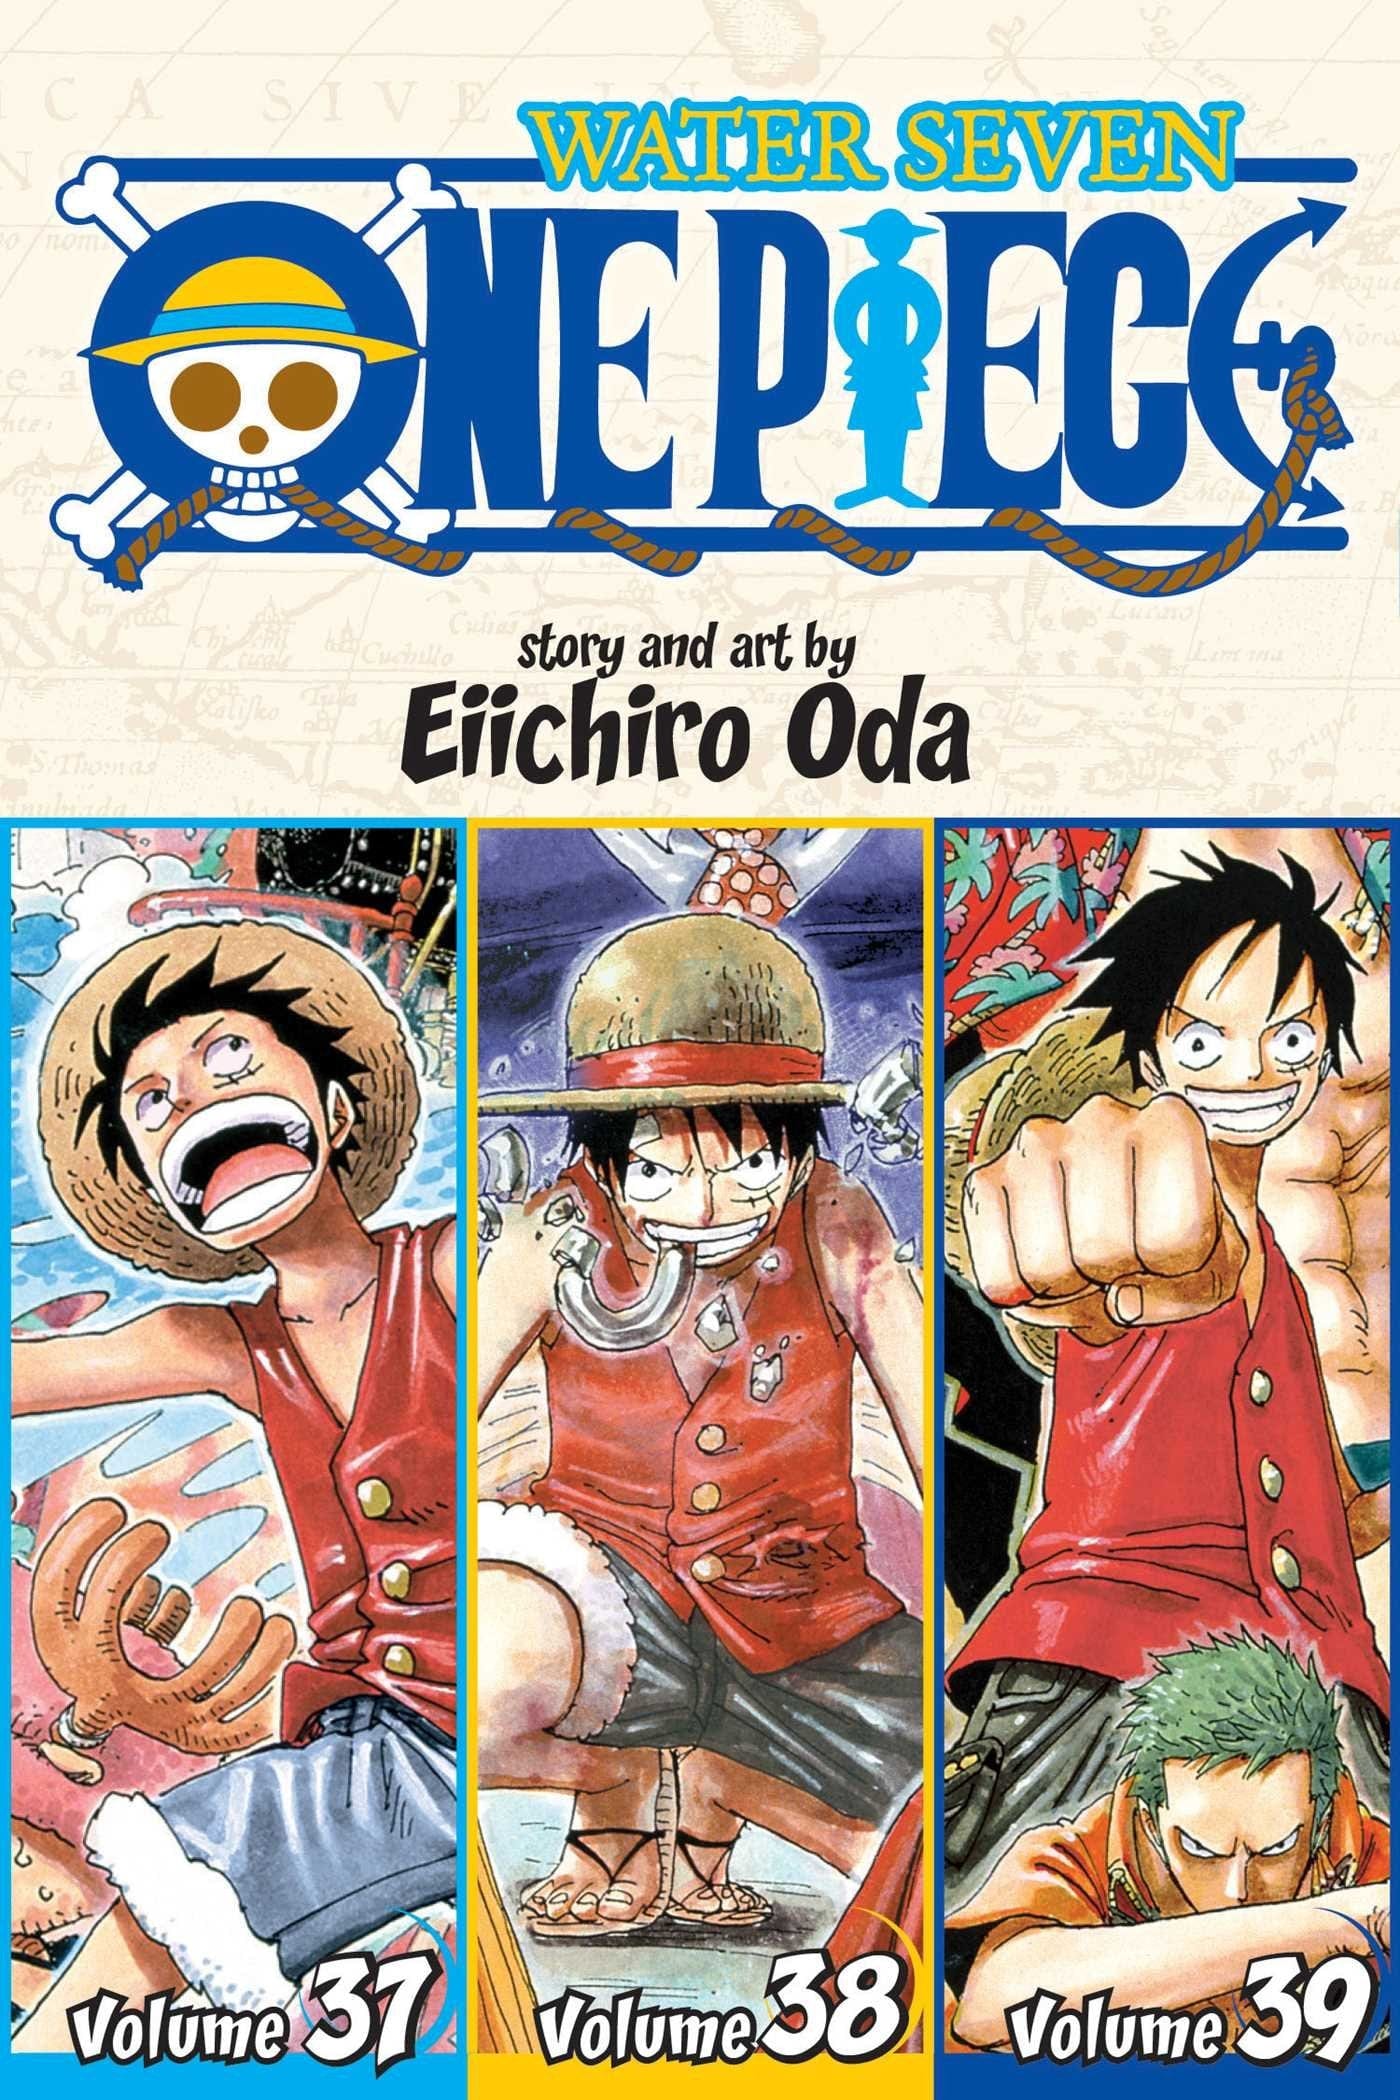 One Piece Omnibus 13: Vol. 37/38/39 - Third Eye